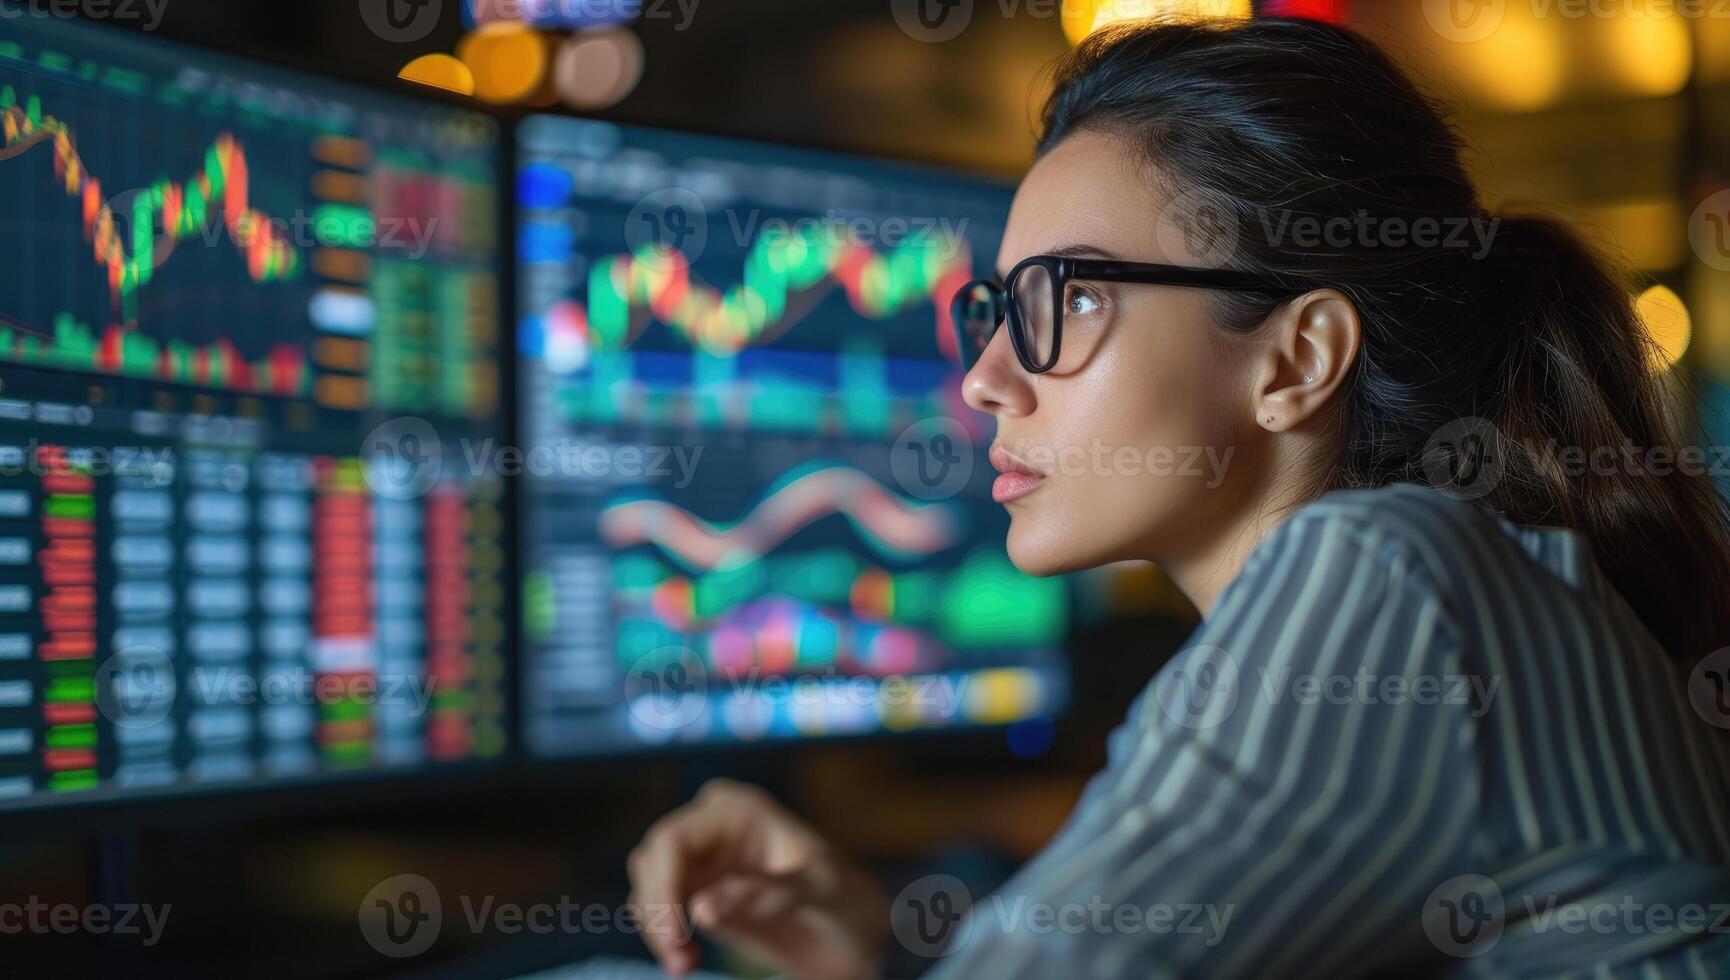 AI generated Asian businesswoman analyzing stock market data on monitors photo